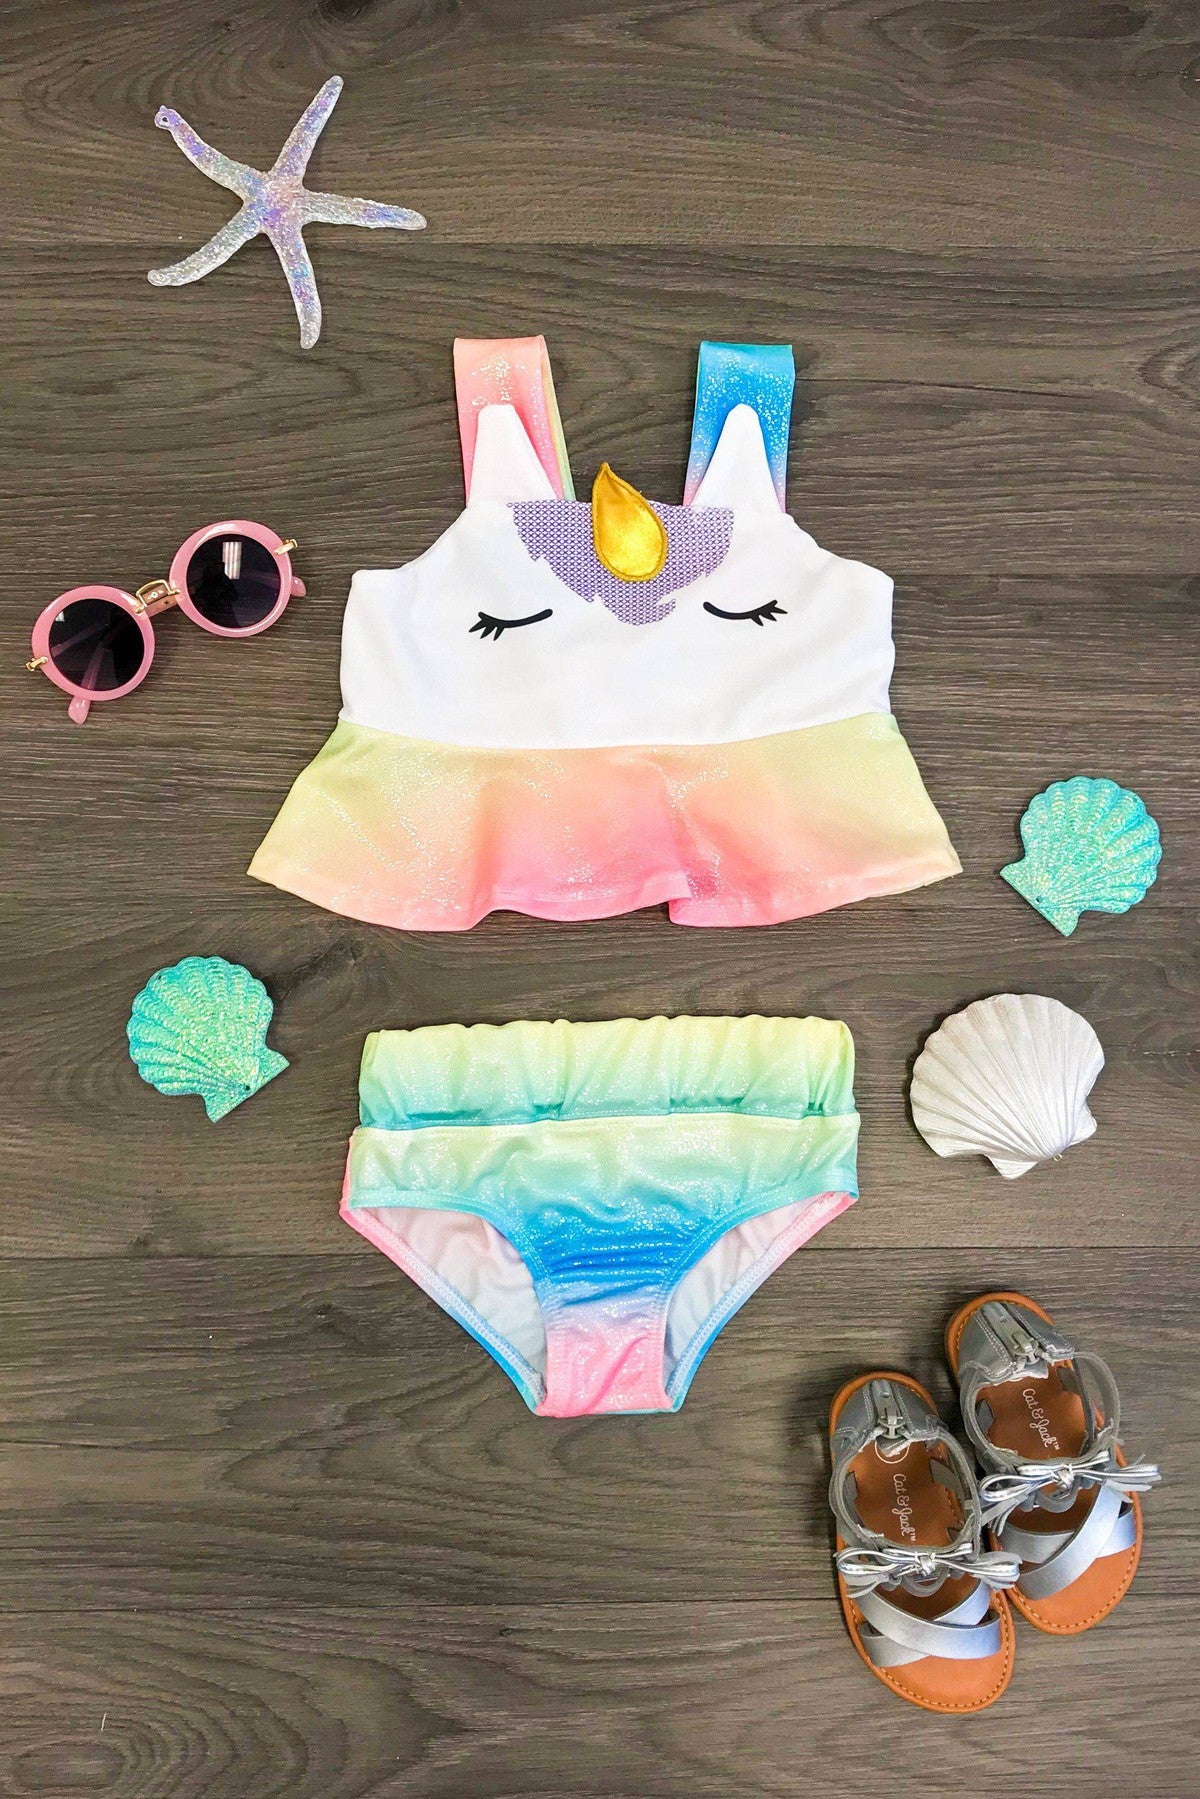 Pastel Rainbow Swimsuit - 2 Piece Bathing Suit 14